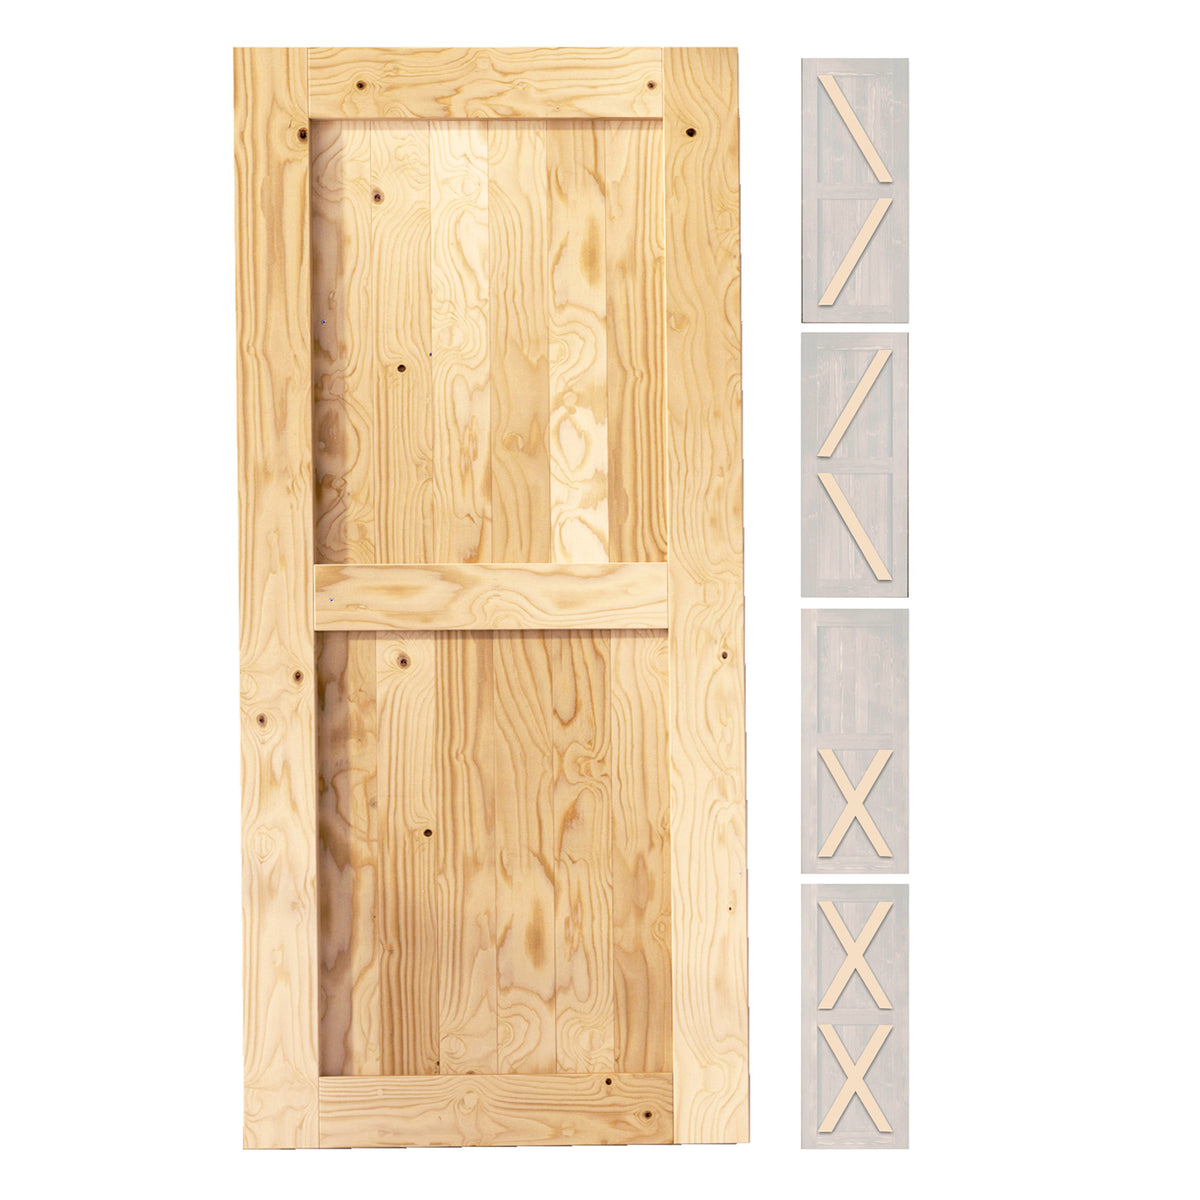 X Brace Wood 1 Panel Barn Door